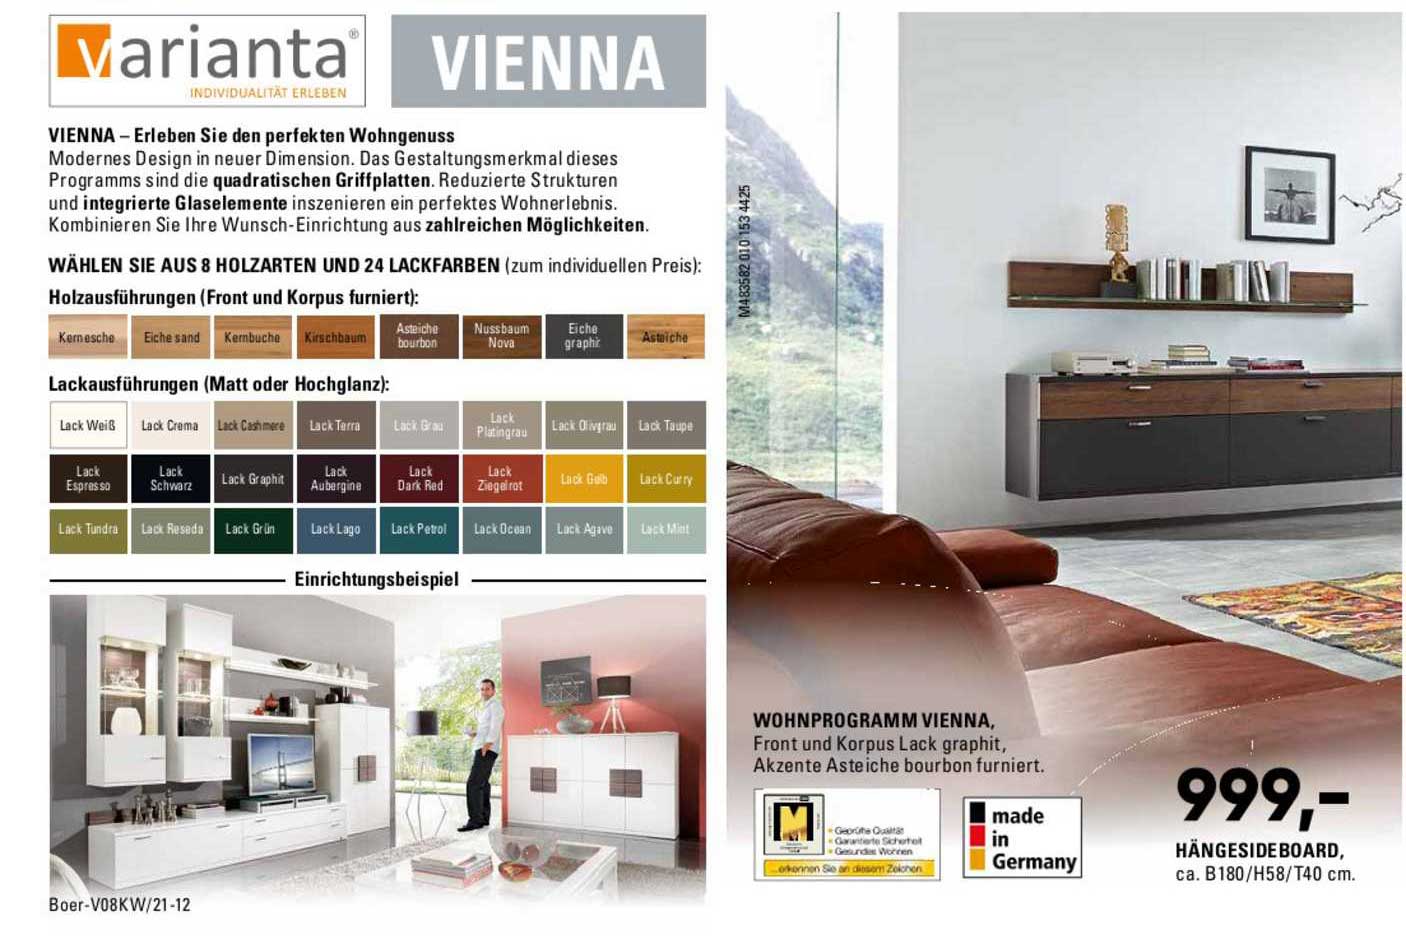 Möbel Boer Varianta Vienna Wohnprogramm